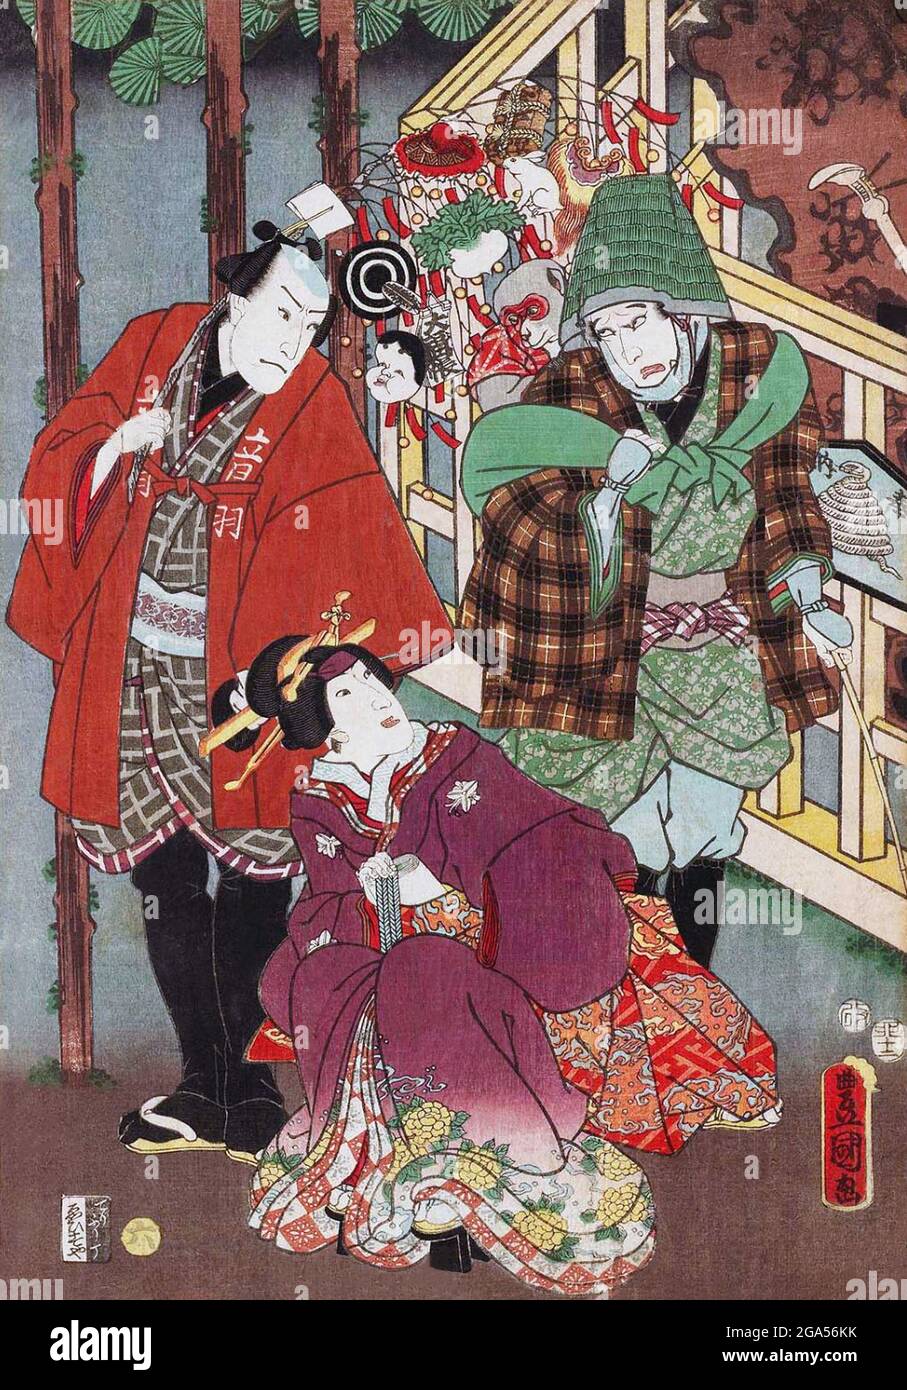 Japan: „Schutz vor dem Regen, Treffen auf der Straße zu Neujahr, Nr. 6: Schauspieler Ichikawa Kodanji IV, Iwai Kumesaburo III, Bando Hikosaburo IV“. Teil des Triptychon-Drucks von Utagawa Kunisada I (1786-1865), 1855. Utagawa Kunisada, auch bekannt als Utagawa Toyokuni III, war der populärste, produktivste und finanzerfolgreichste Designer von Ukiyo-e-Holzschnitten im Japan des 19. Jahrhunderts. In seiner eigenen Zeit übertraf sein Ruf den seiner Zeitgenossen Hokusai, Hiroshige und Kuniyoshi weit. Seine Lieblingsthemen waren Vergnügungshäuser und Teezeremonien. Stockfoto